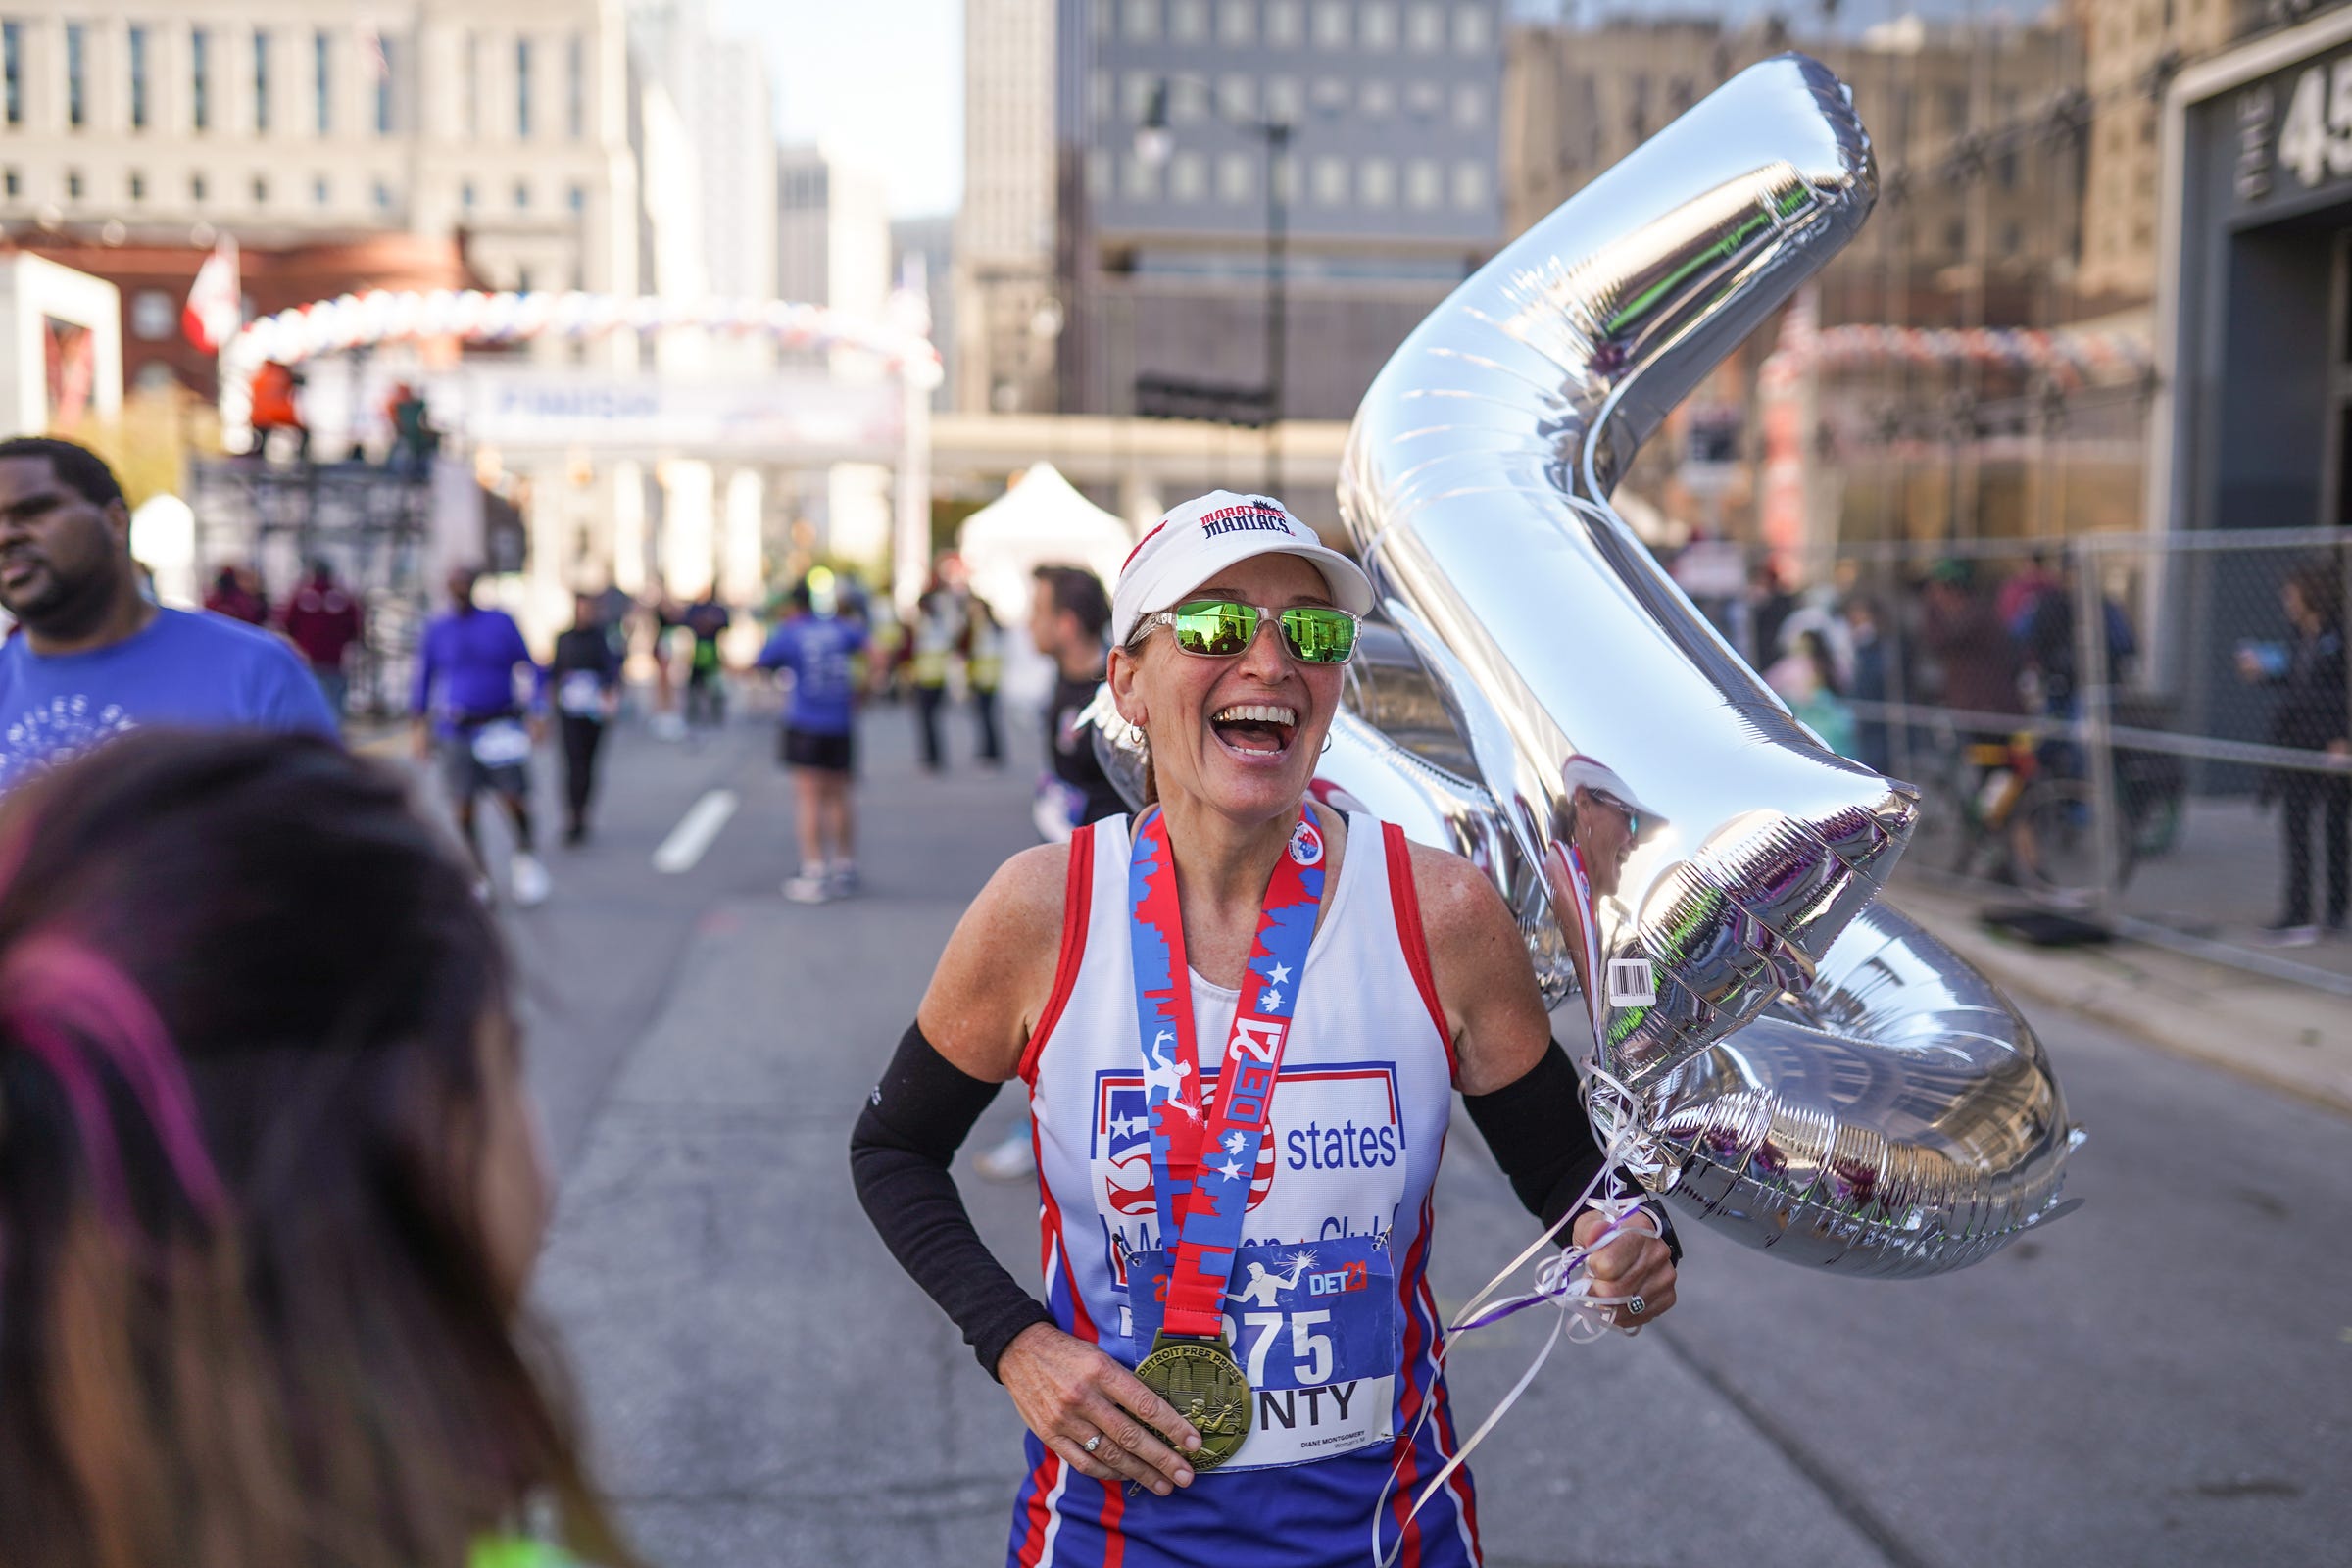 Detroit Free Press Marathon unveils dramatic changes to course